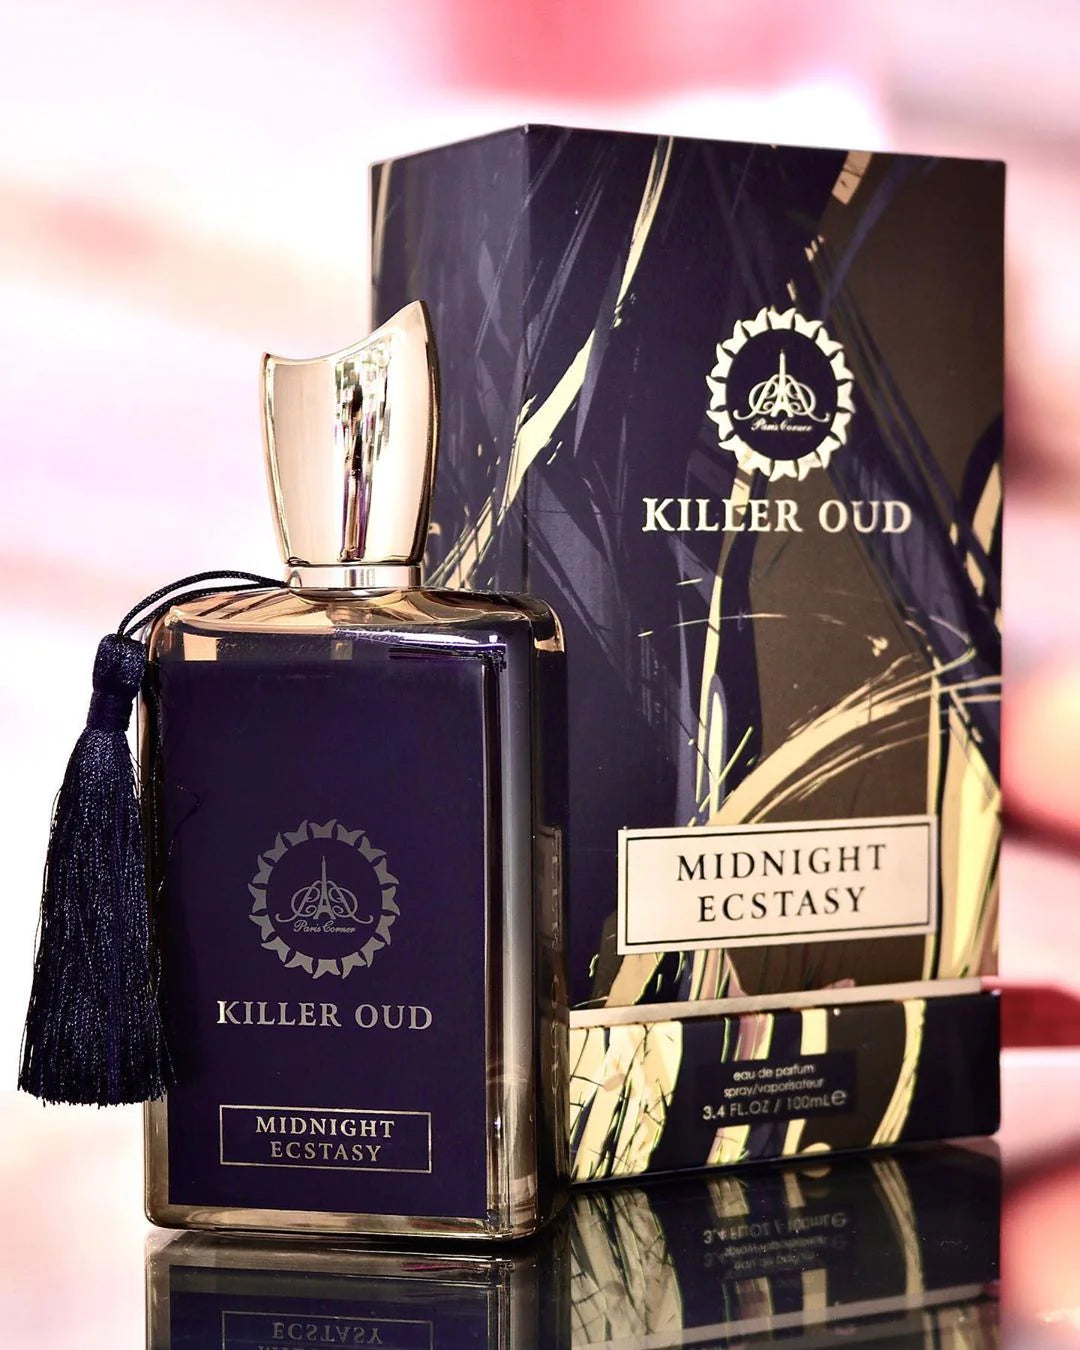 Killer Oud Midnight Ectasy